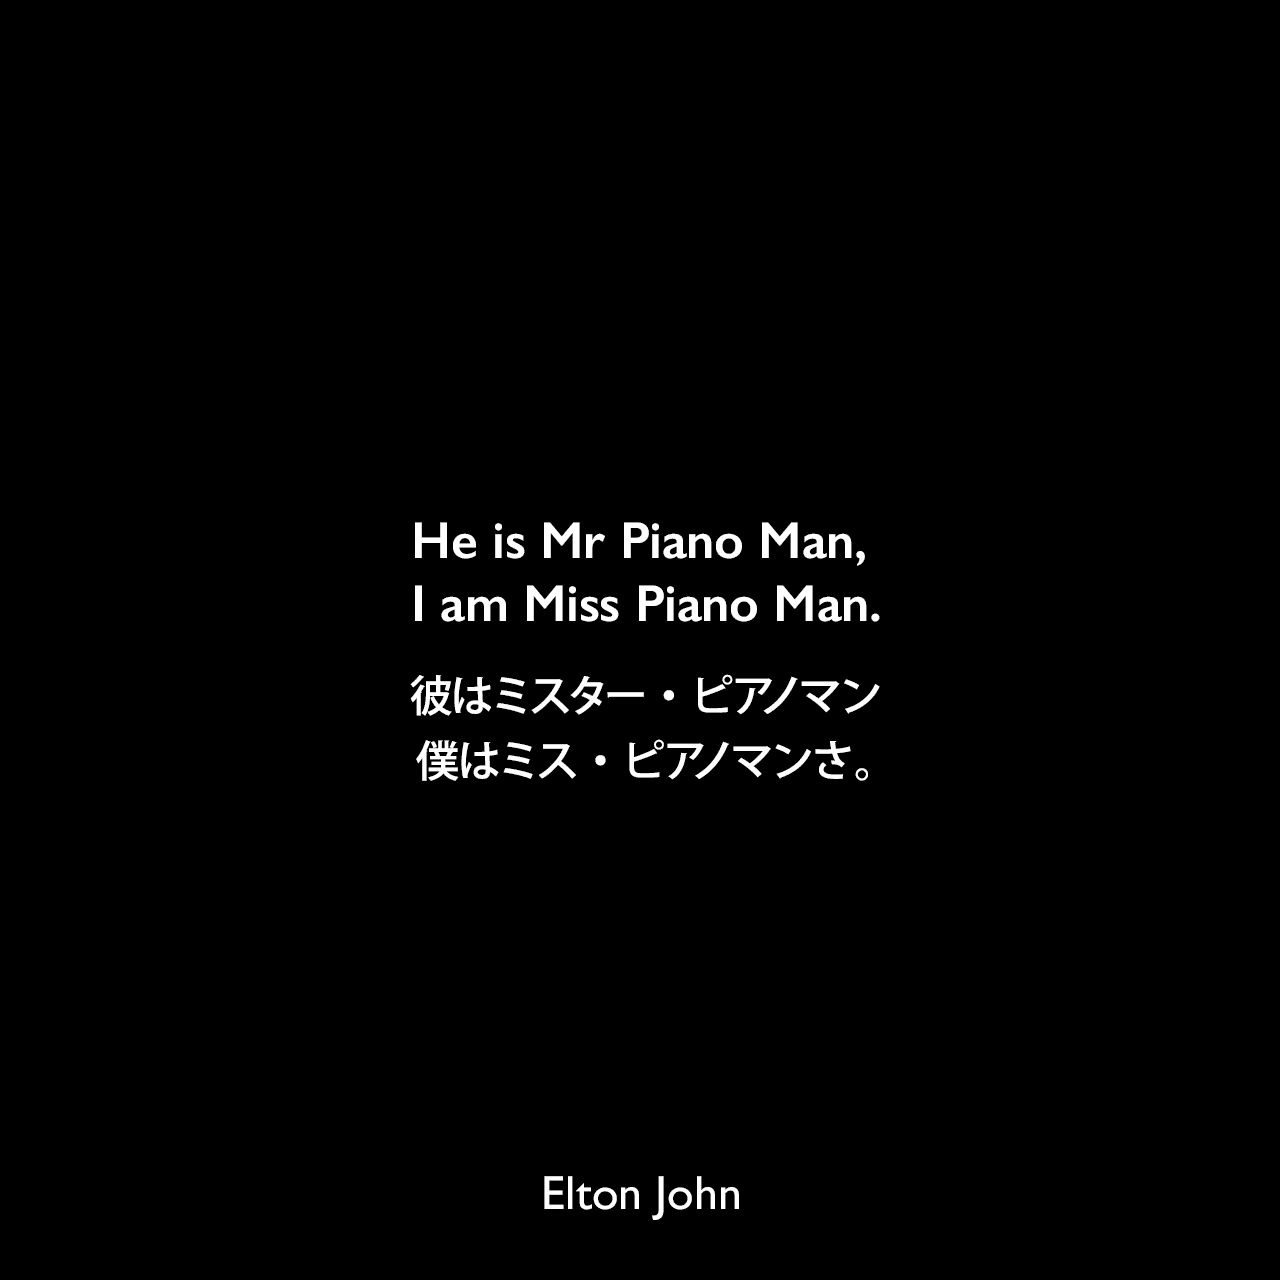 He is Mr Piano Man, I am Miss Piano Man.彼はミスター・ピアノマン、僕はミス・ピアノマンさ。- ビリー・ジョエルとのツアーでElton John